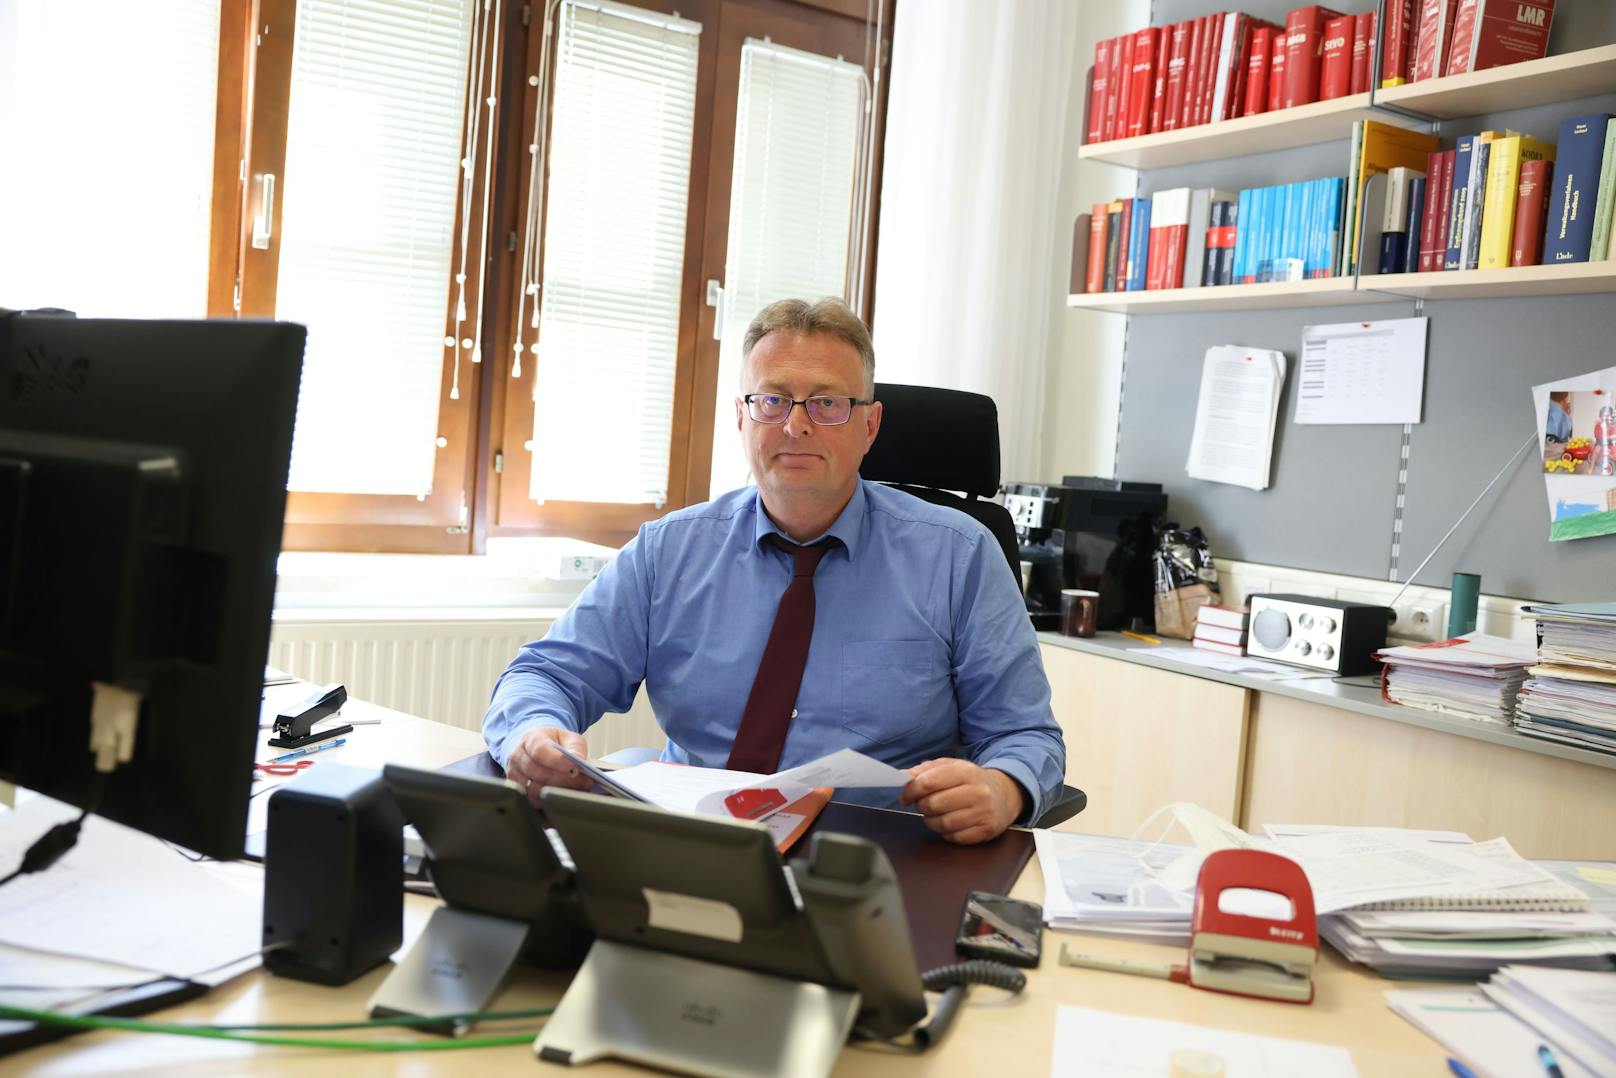 Bezirksamtsleiter Heinz Liebert leitet das Amt seit zwölf Jahren.